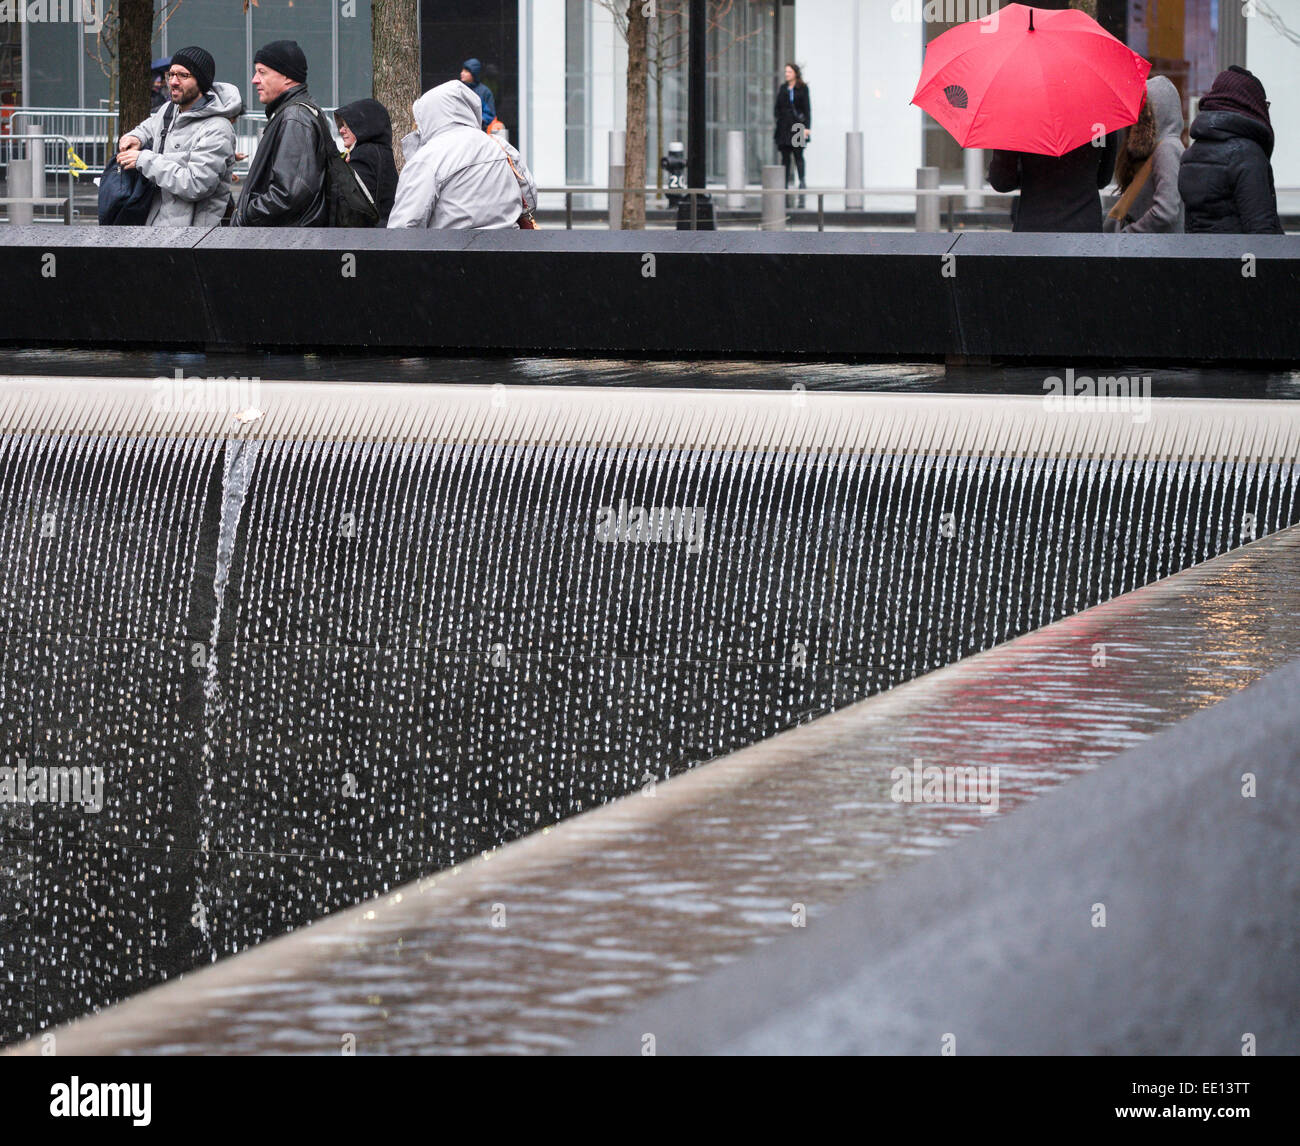 Falls Memorial détail dans la pluie avec parapluie rouge. Détail de la cascade qui compose une partie clé le 9/11 memorial. Banque D'Images